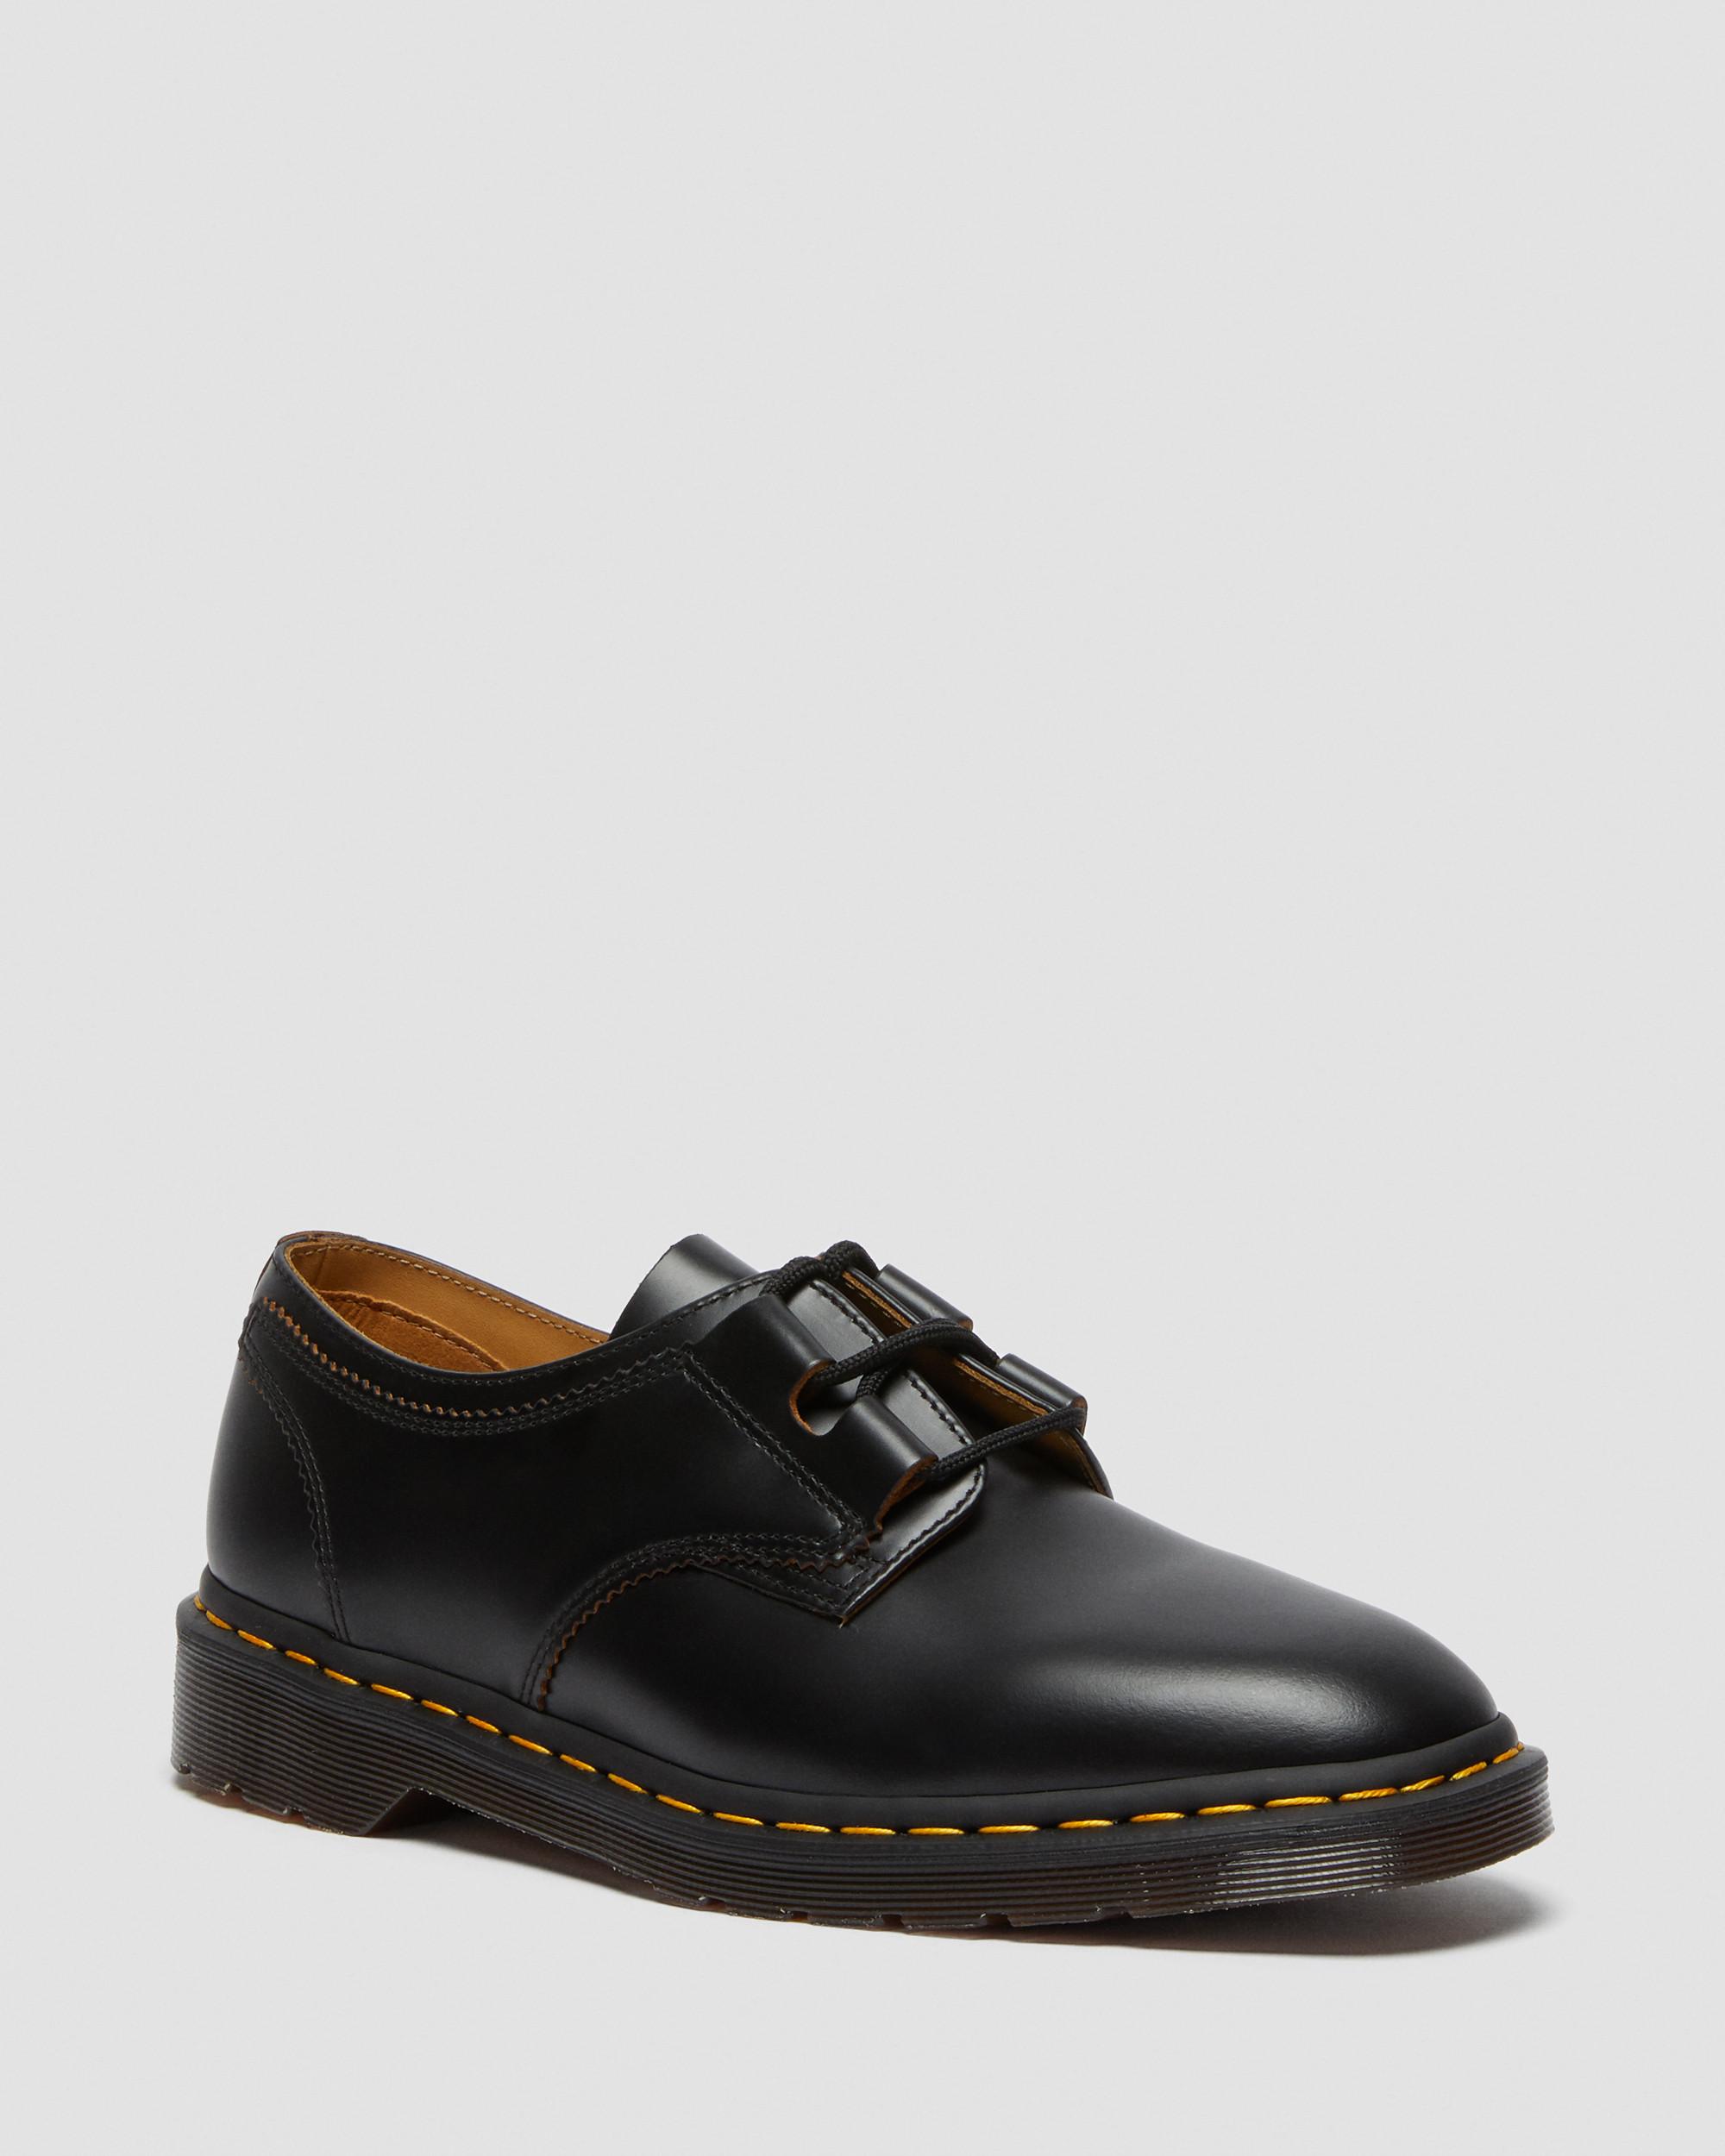 Boots, Shoes \u0026 Sandals | Dr. Martens